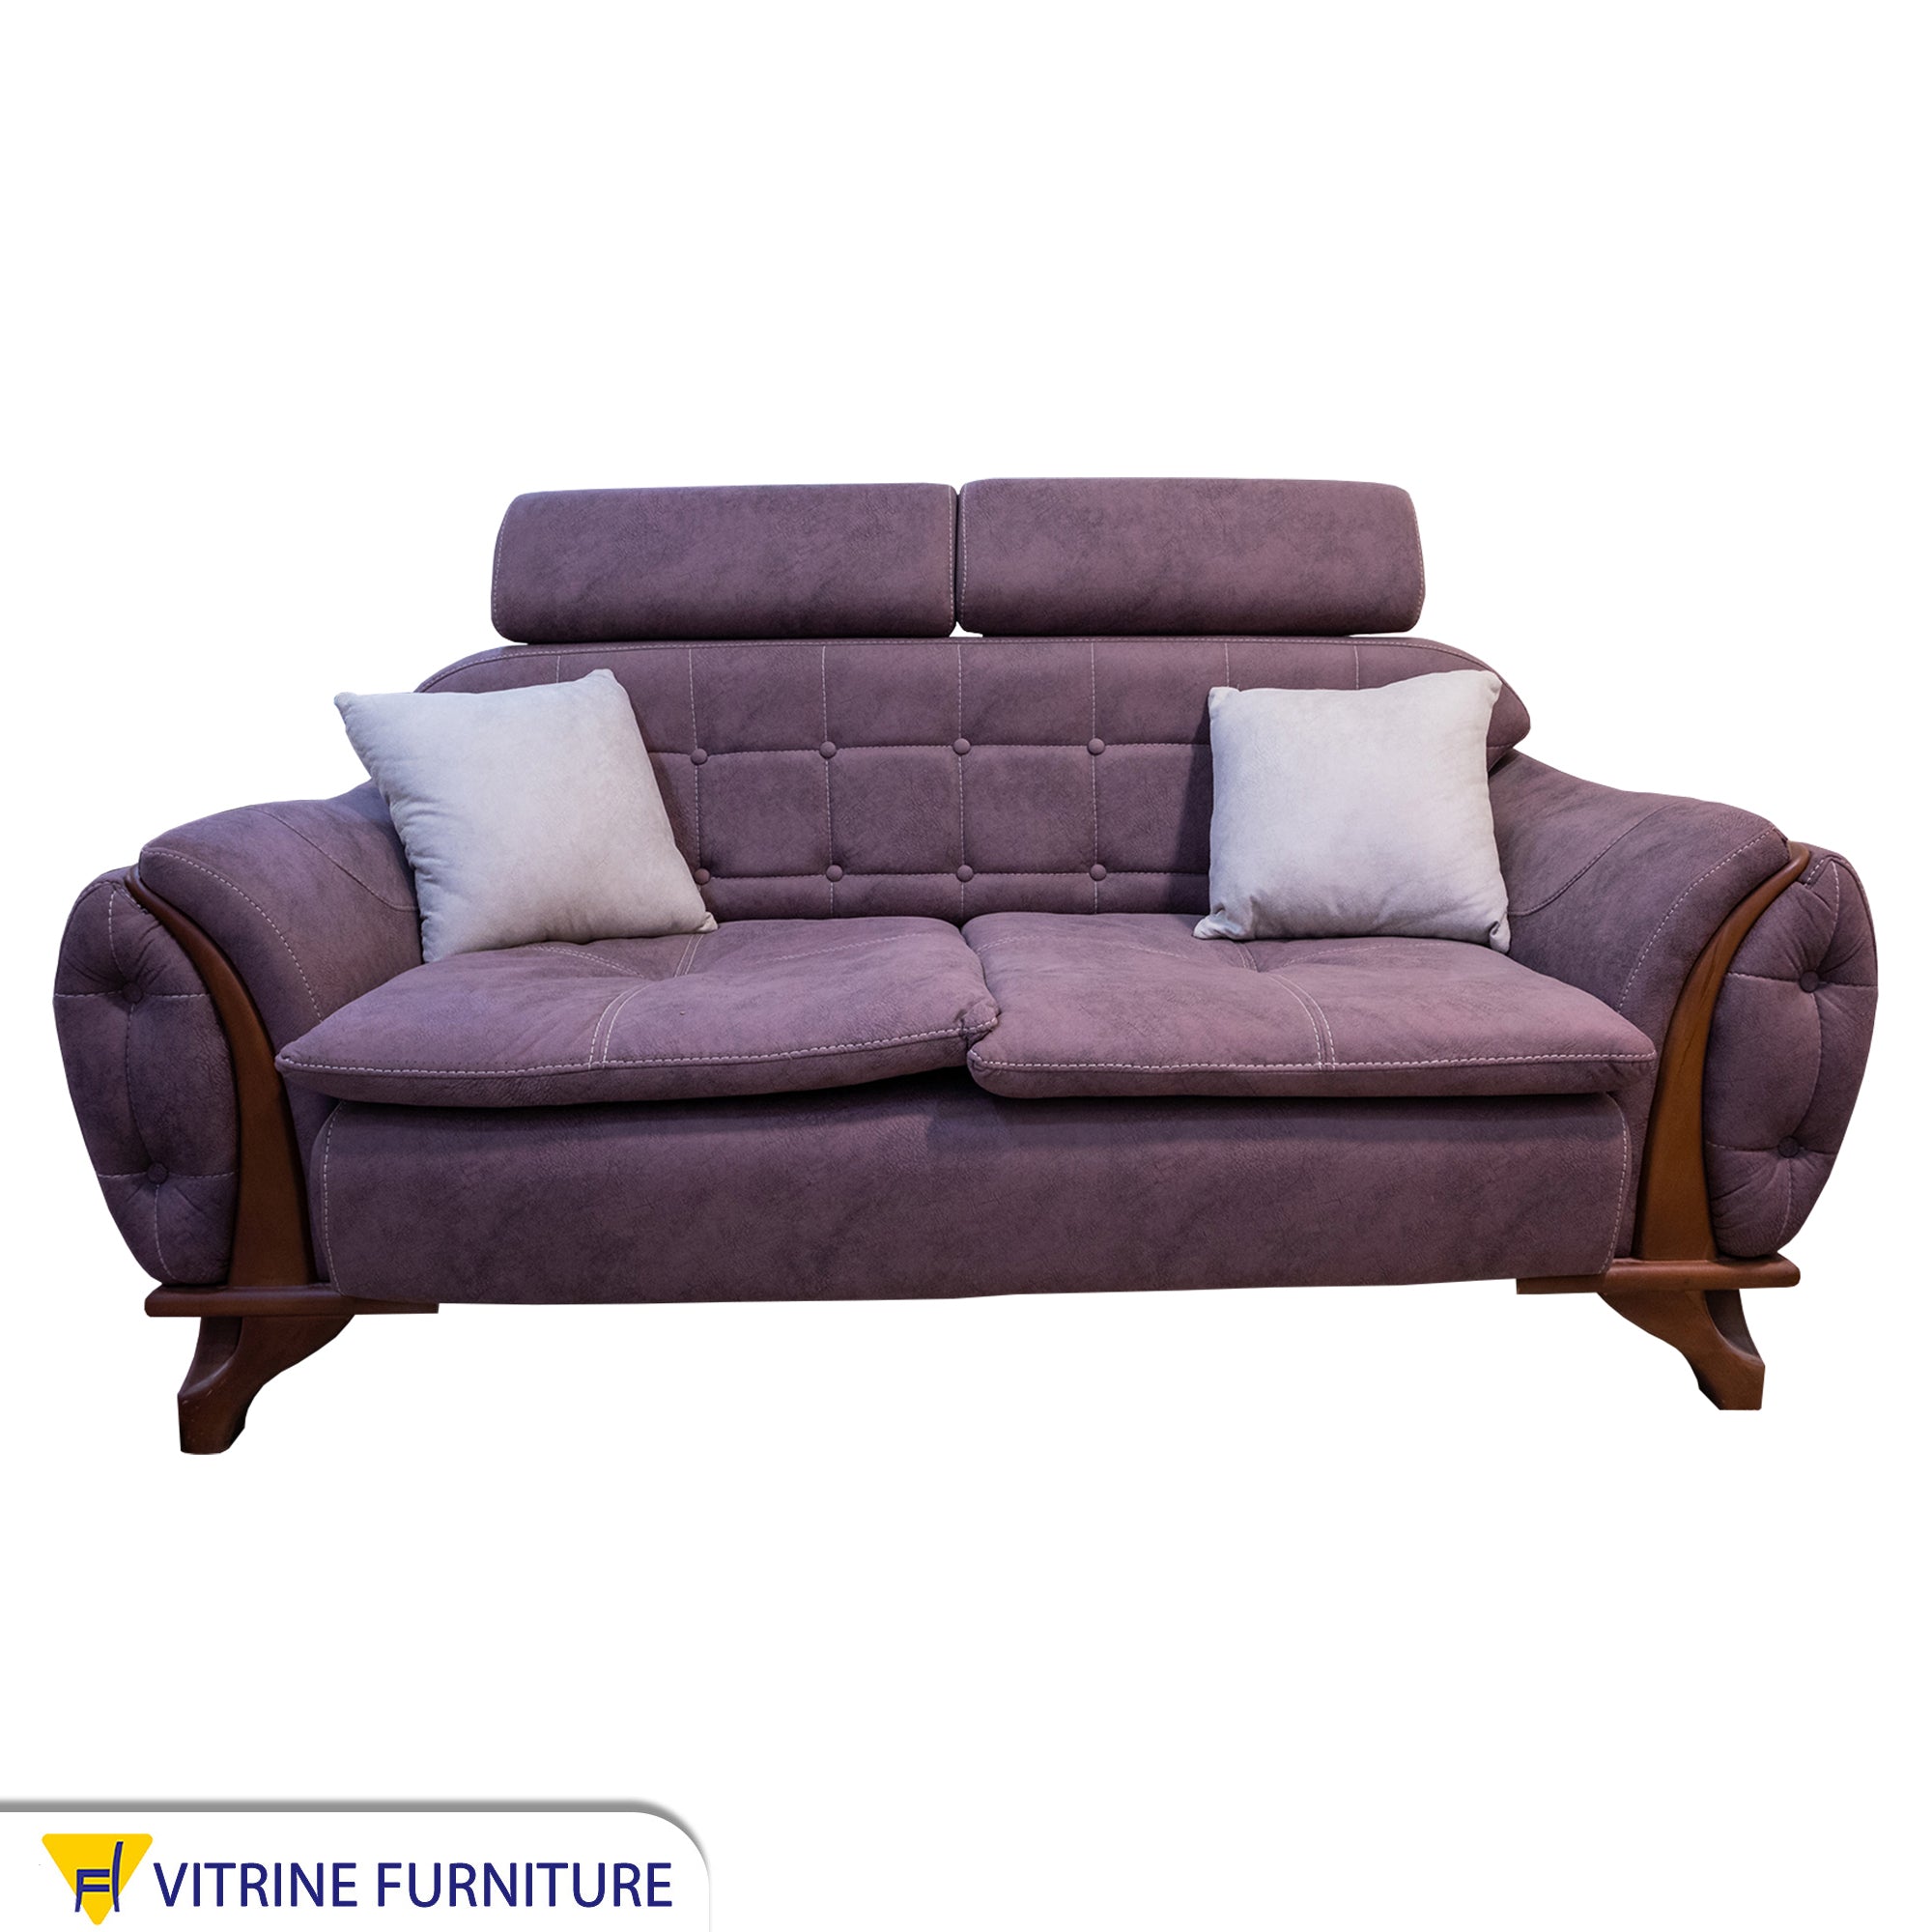 Purple living room